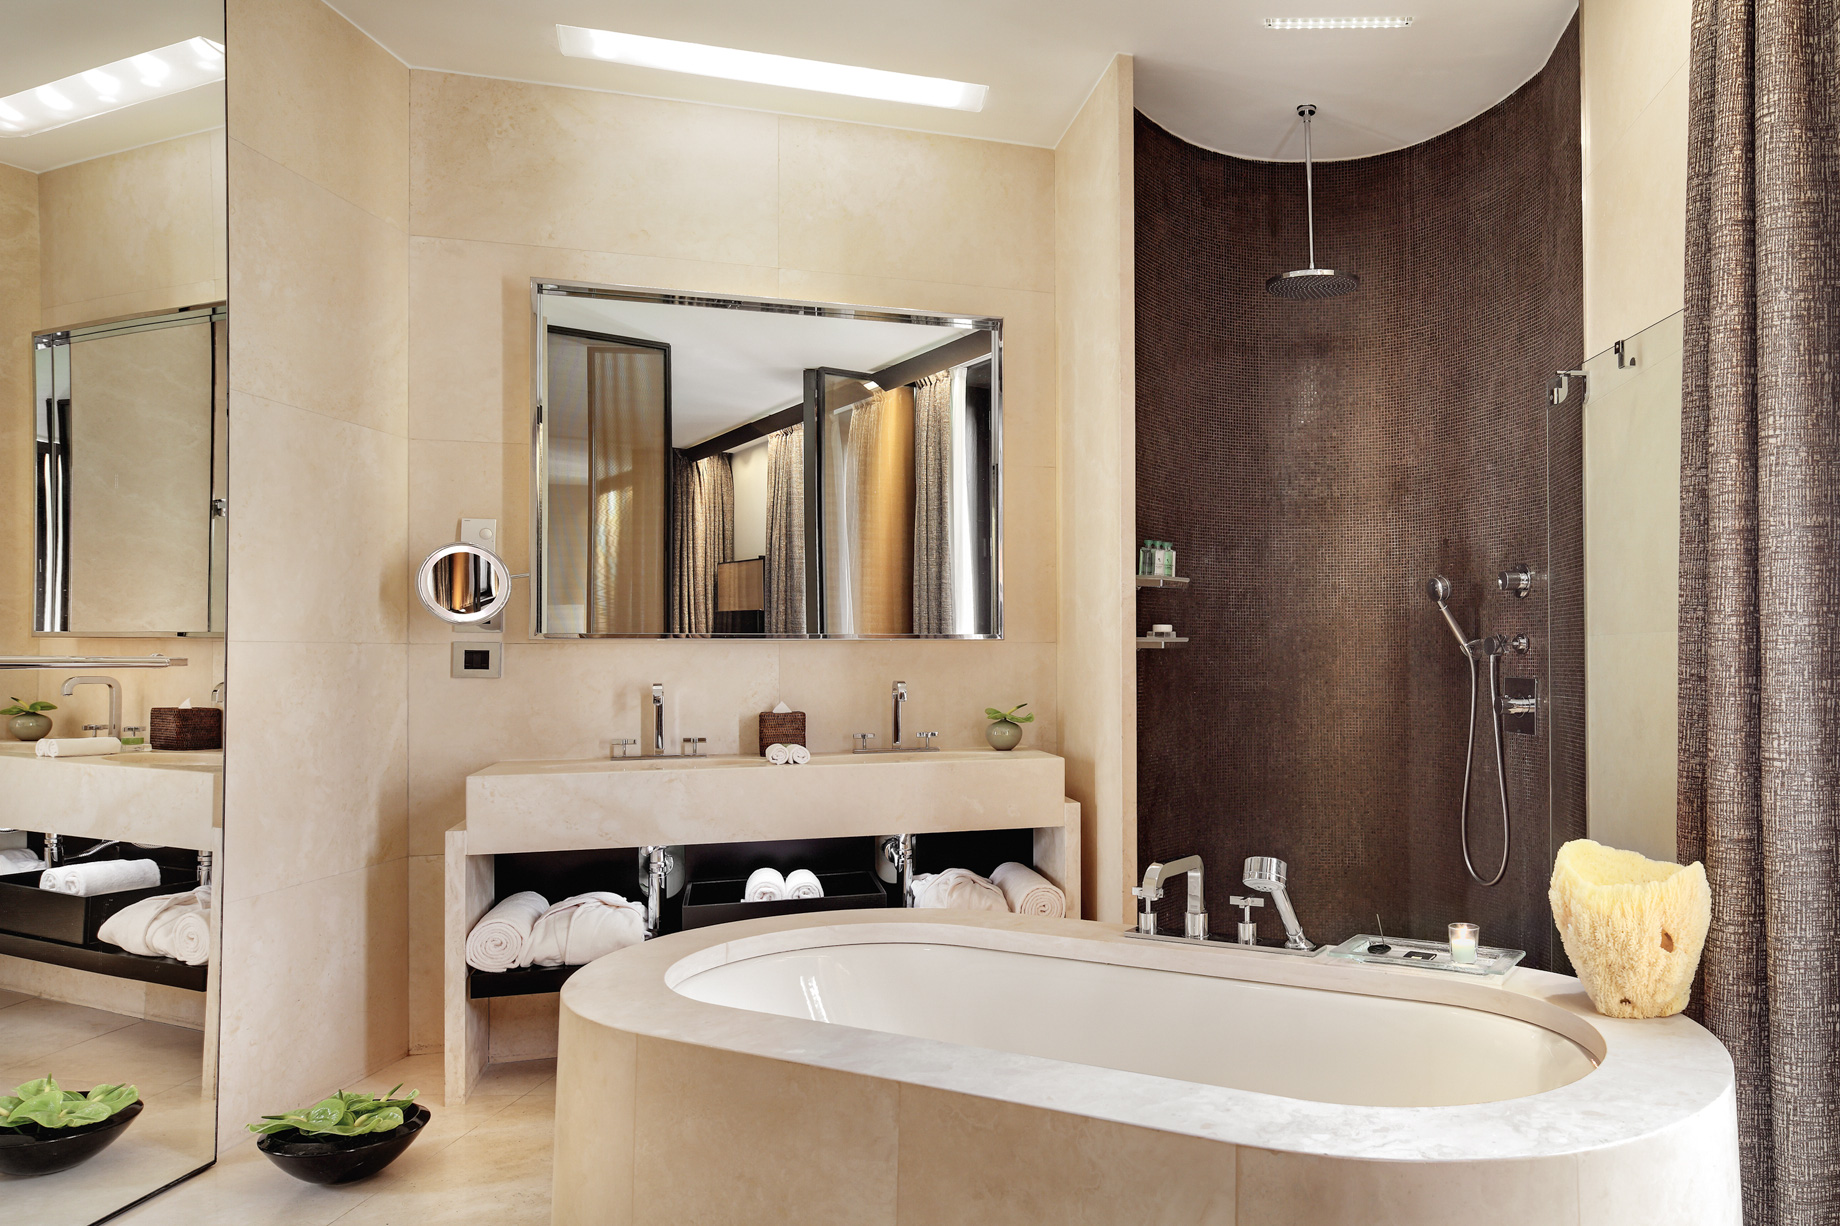 Bvlgari Hotel Milano – Milan, Italy – One Bedroom Suite Bathroom